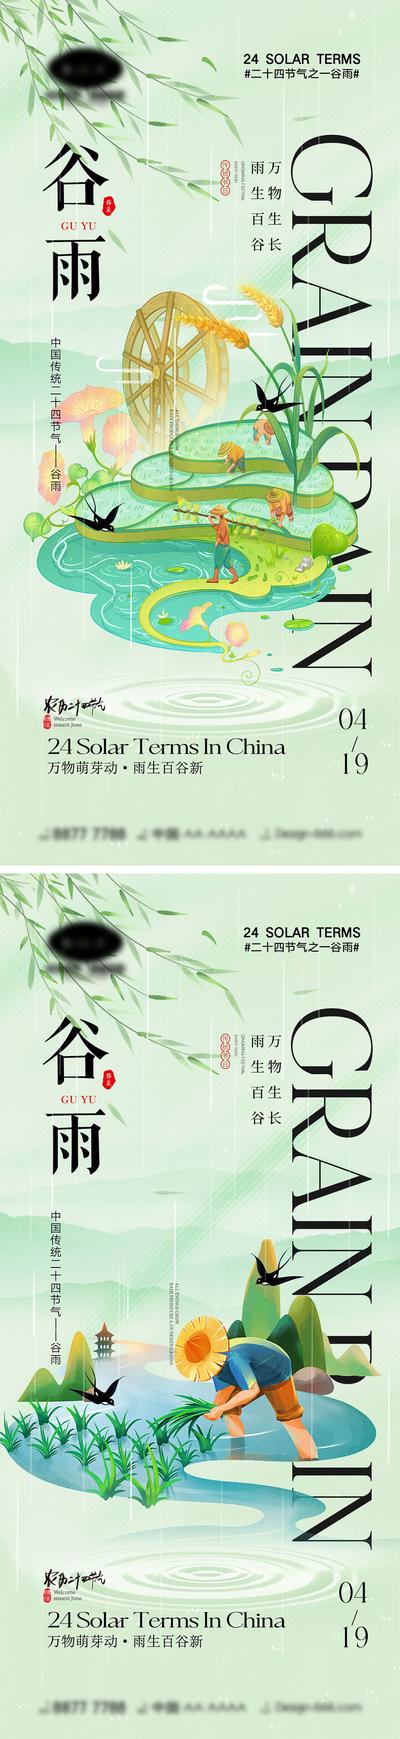 南门网 海报 中国传统节日 二十四节气 清明 谷雨 水墨 牧童 农民 雨水 稻谷 竹子